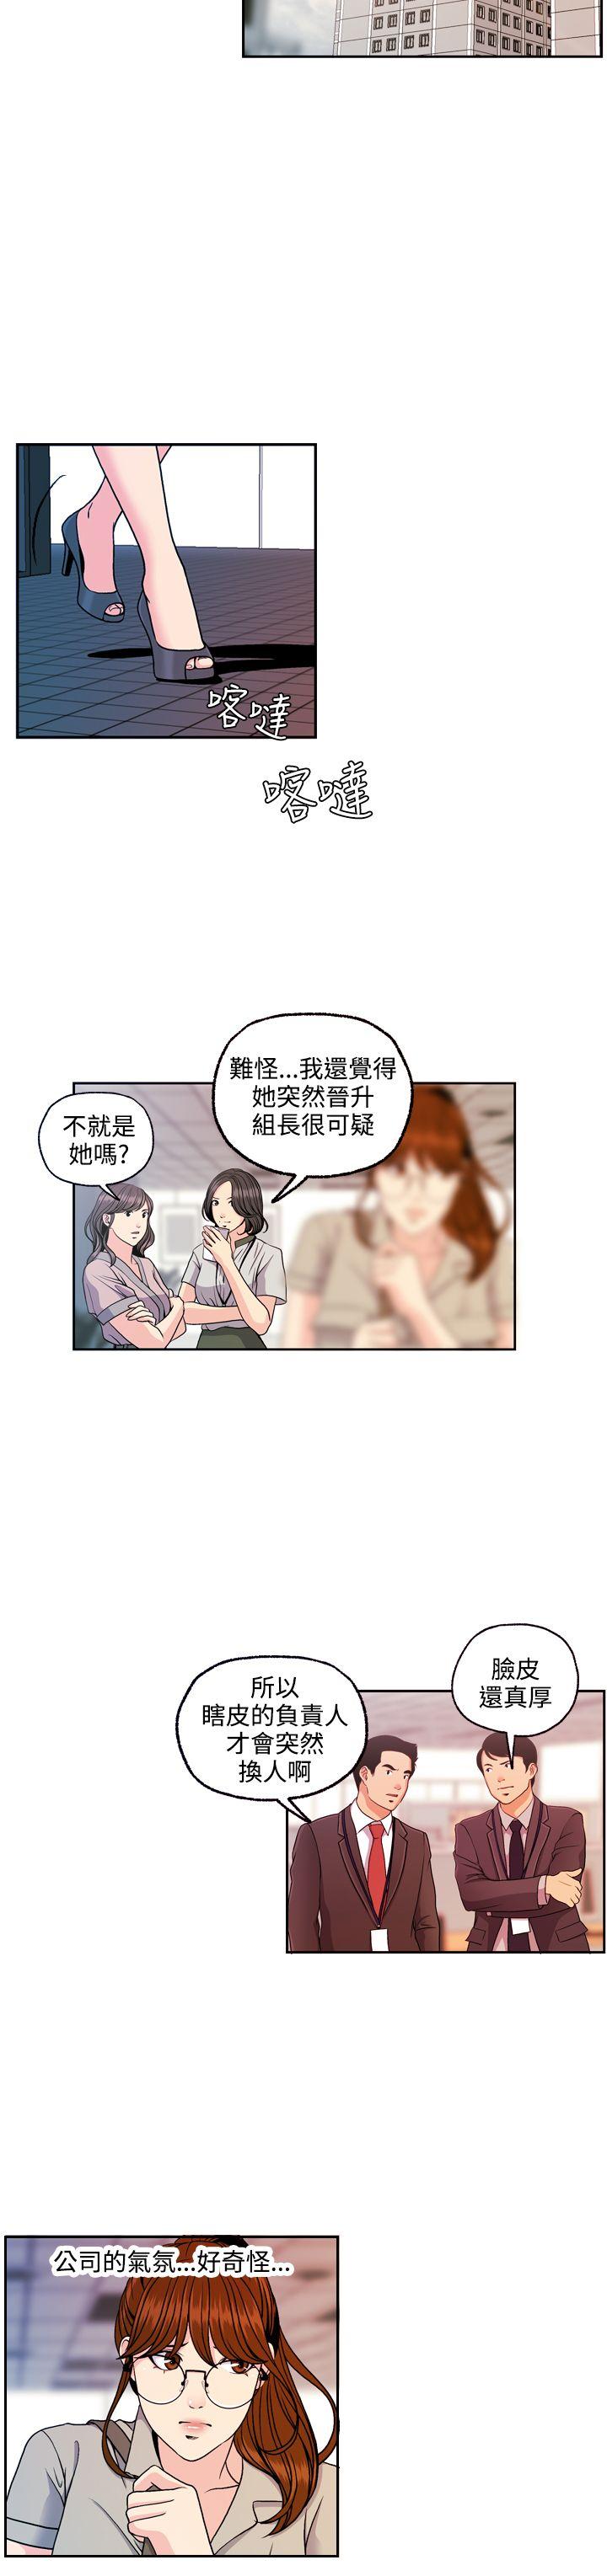 韩国污漫画 淫stagram 第12话 23